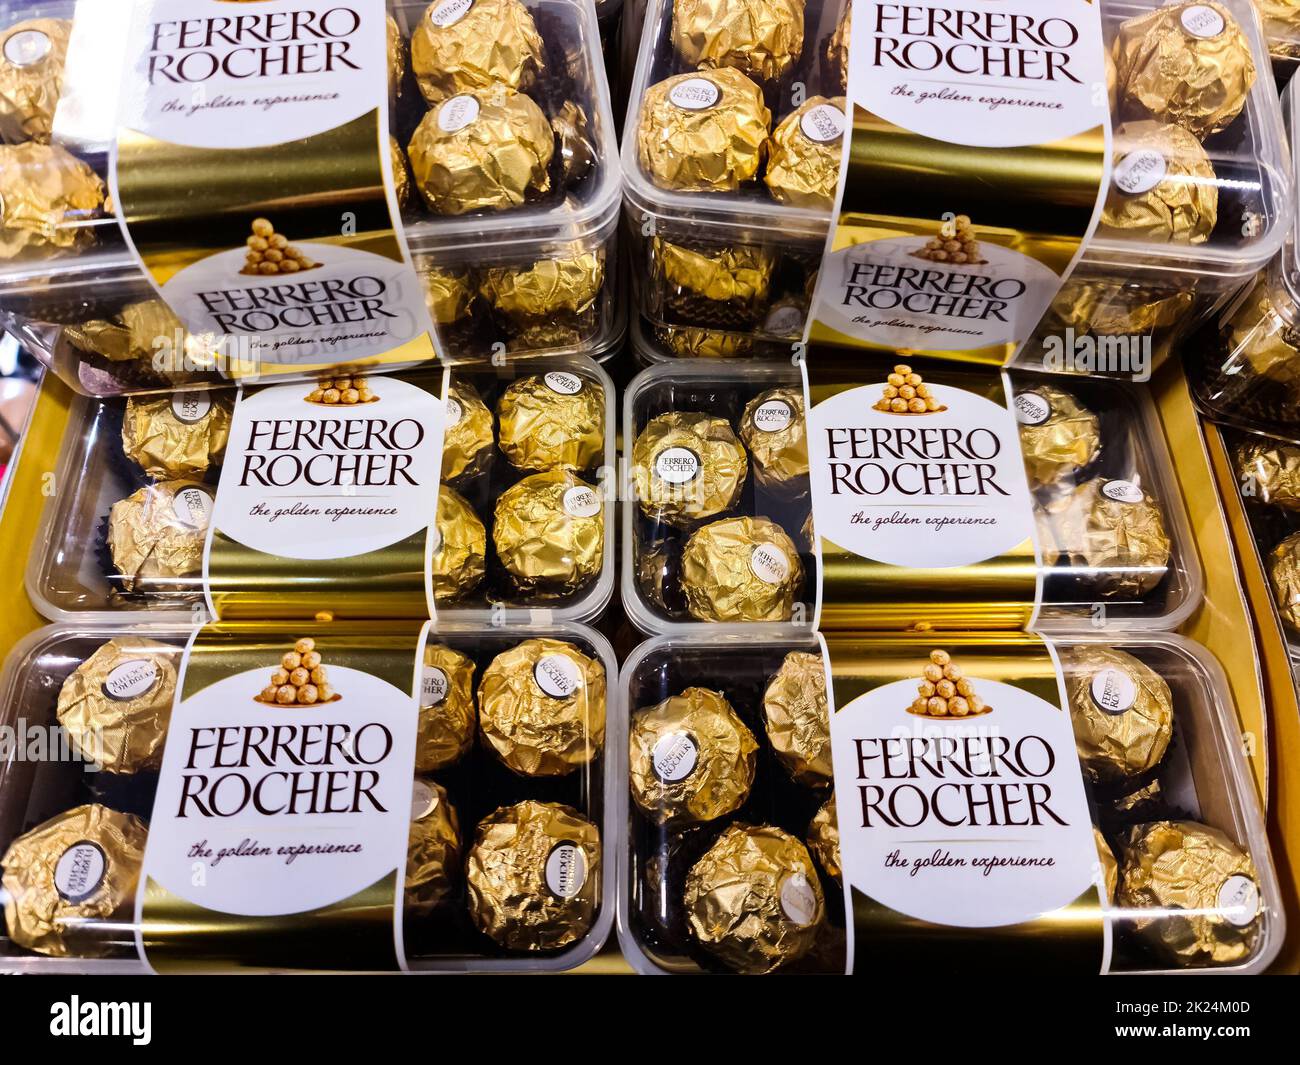 Kiel, Allemagne - 15. Février 2022: Une pile de bonbons au chocolat de marque Ferrero Rocher à vendre dans un supermarché Banque D'Images